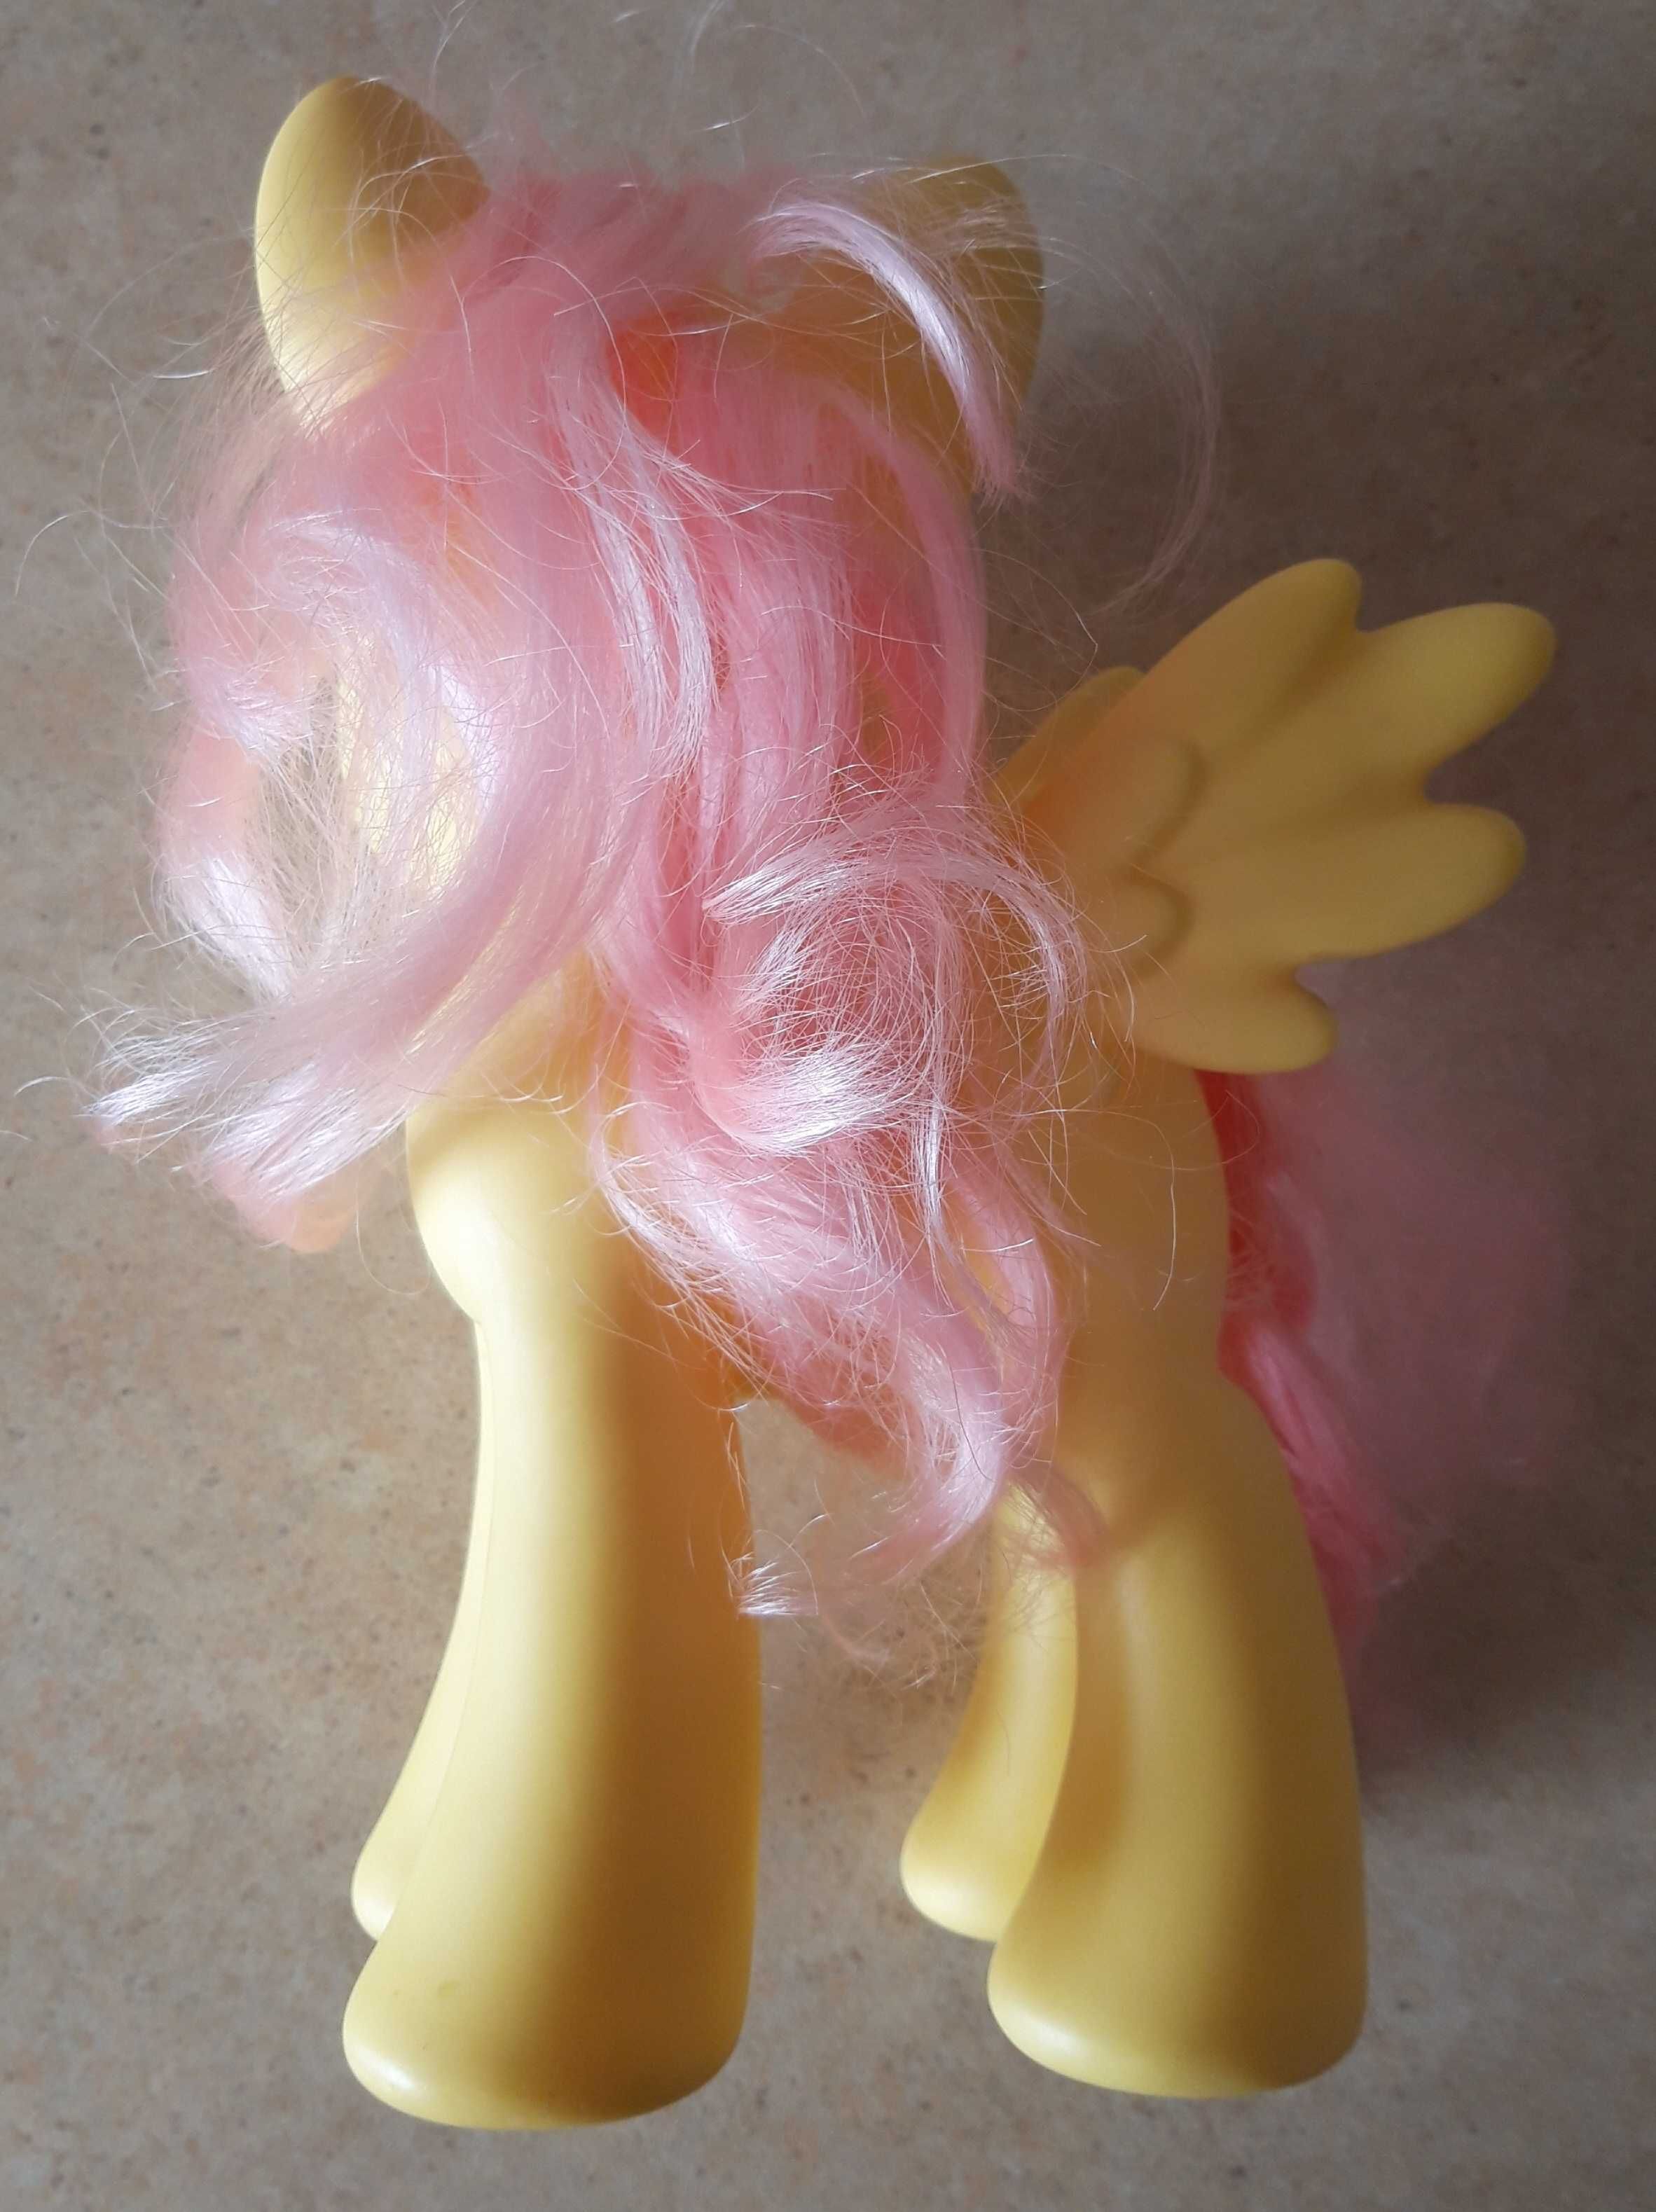 My Little Pony kucyk DUŻY 21 cm Fluttershy